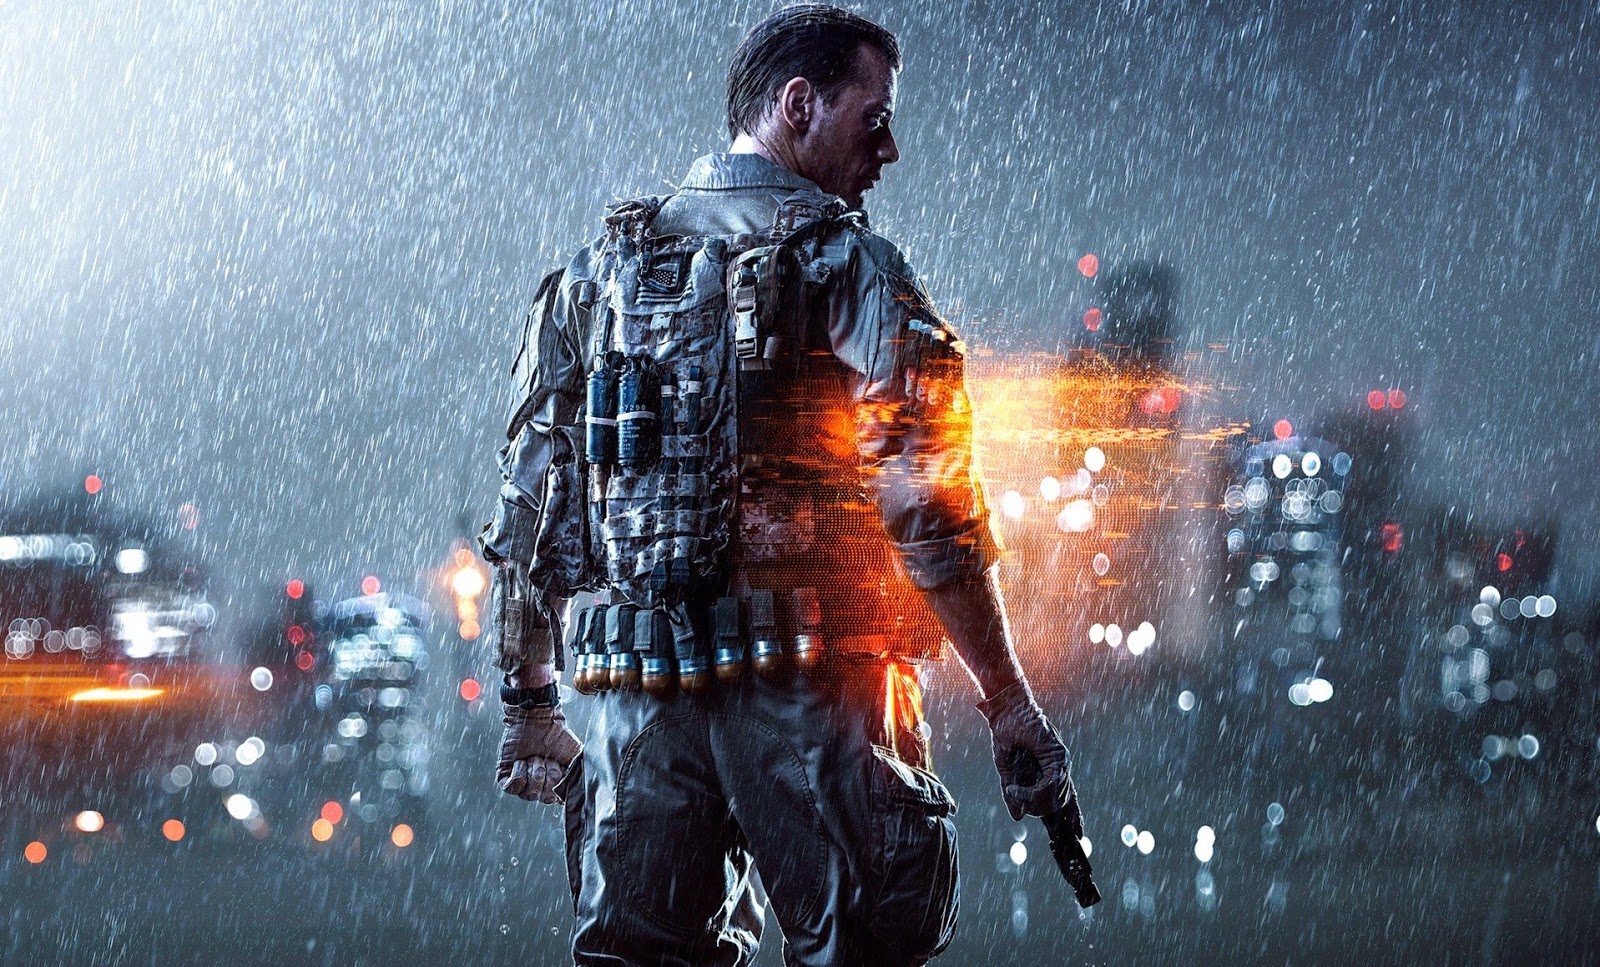 Battlefield 4 mostra fantástica ambientação em novas imagens